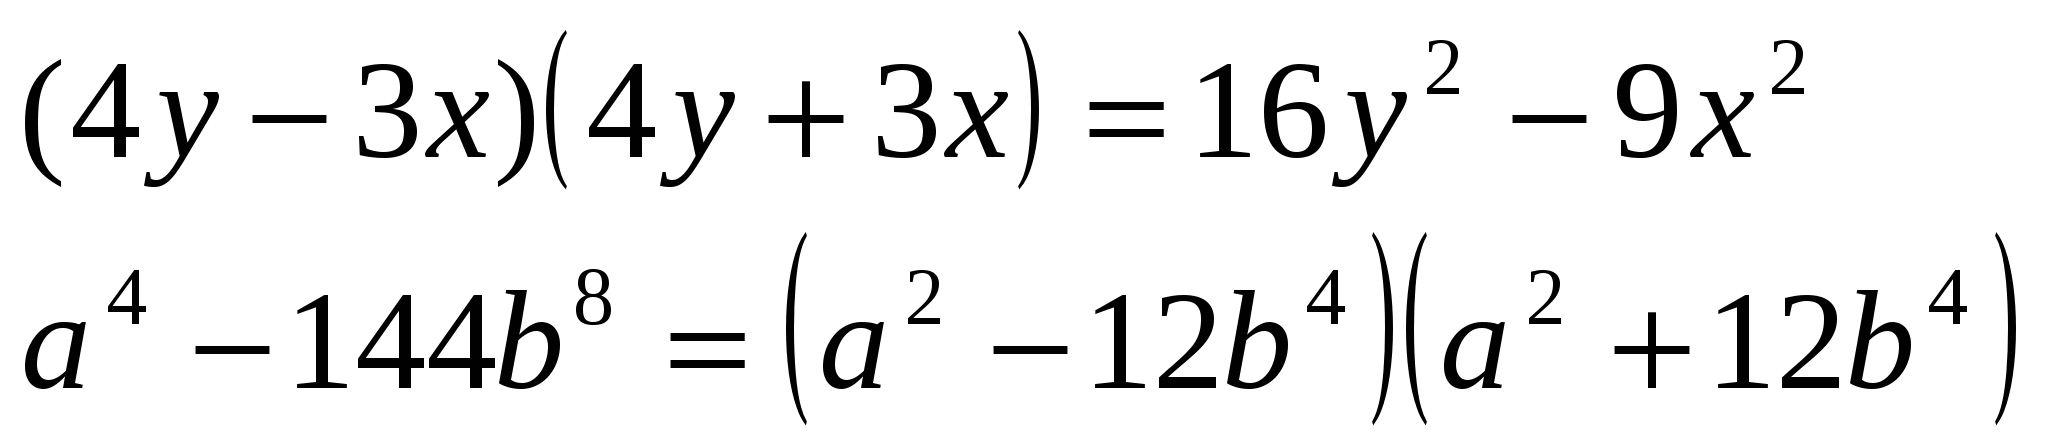 Умножение разности двух выражений на их сумму. Умножение разности двух выражений на из сумму. Умножение разности двух выражений на их сумму 7. Умножение разности двух выражений на их сумму формула.